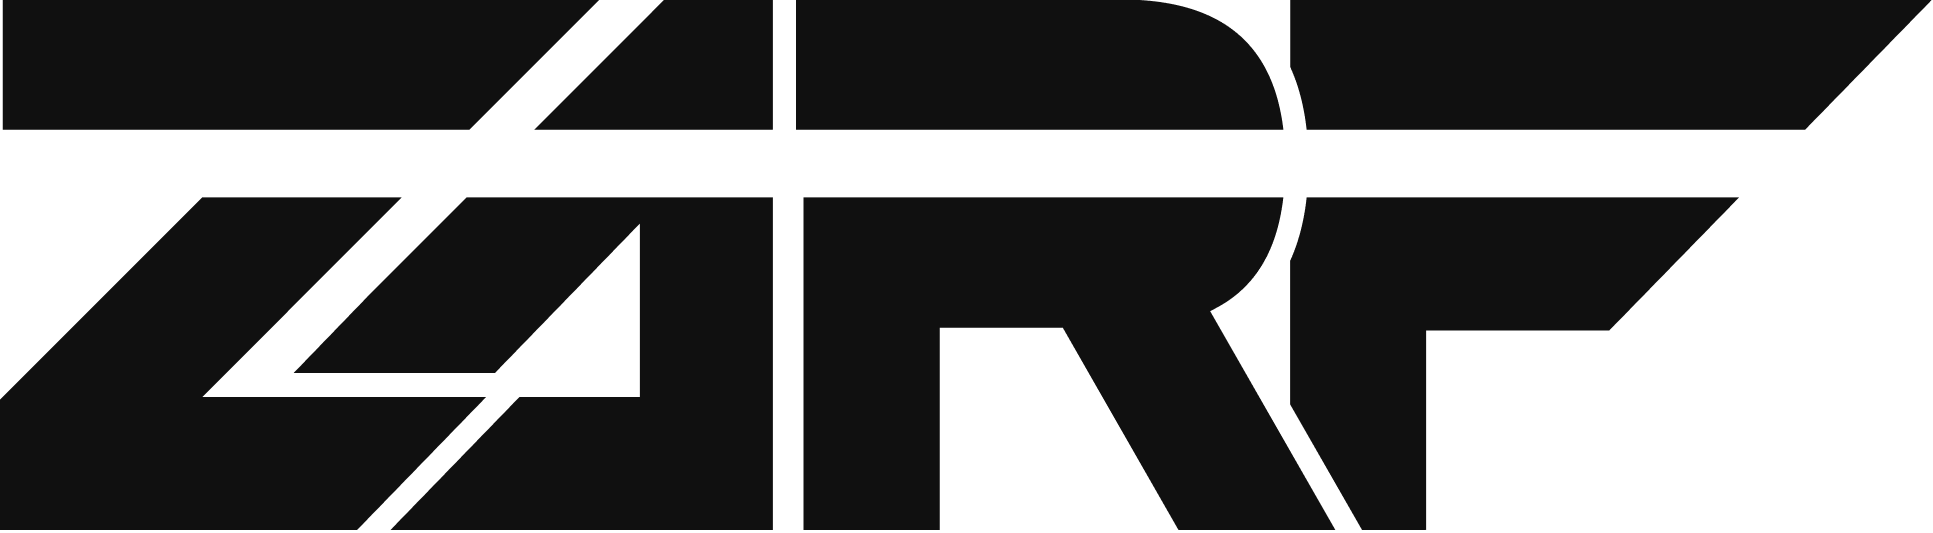 ZARF Marketing Logo SVG 3